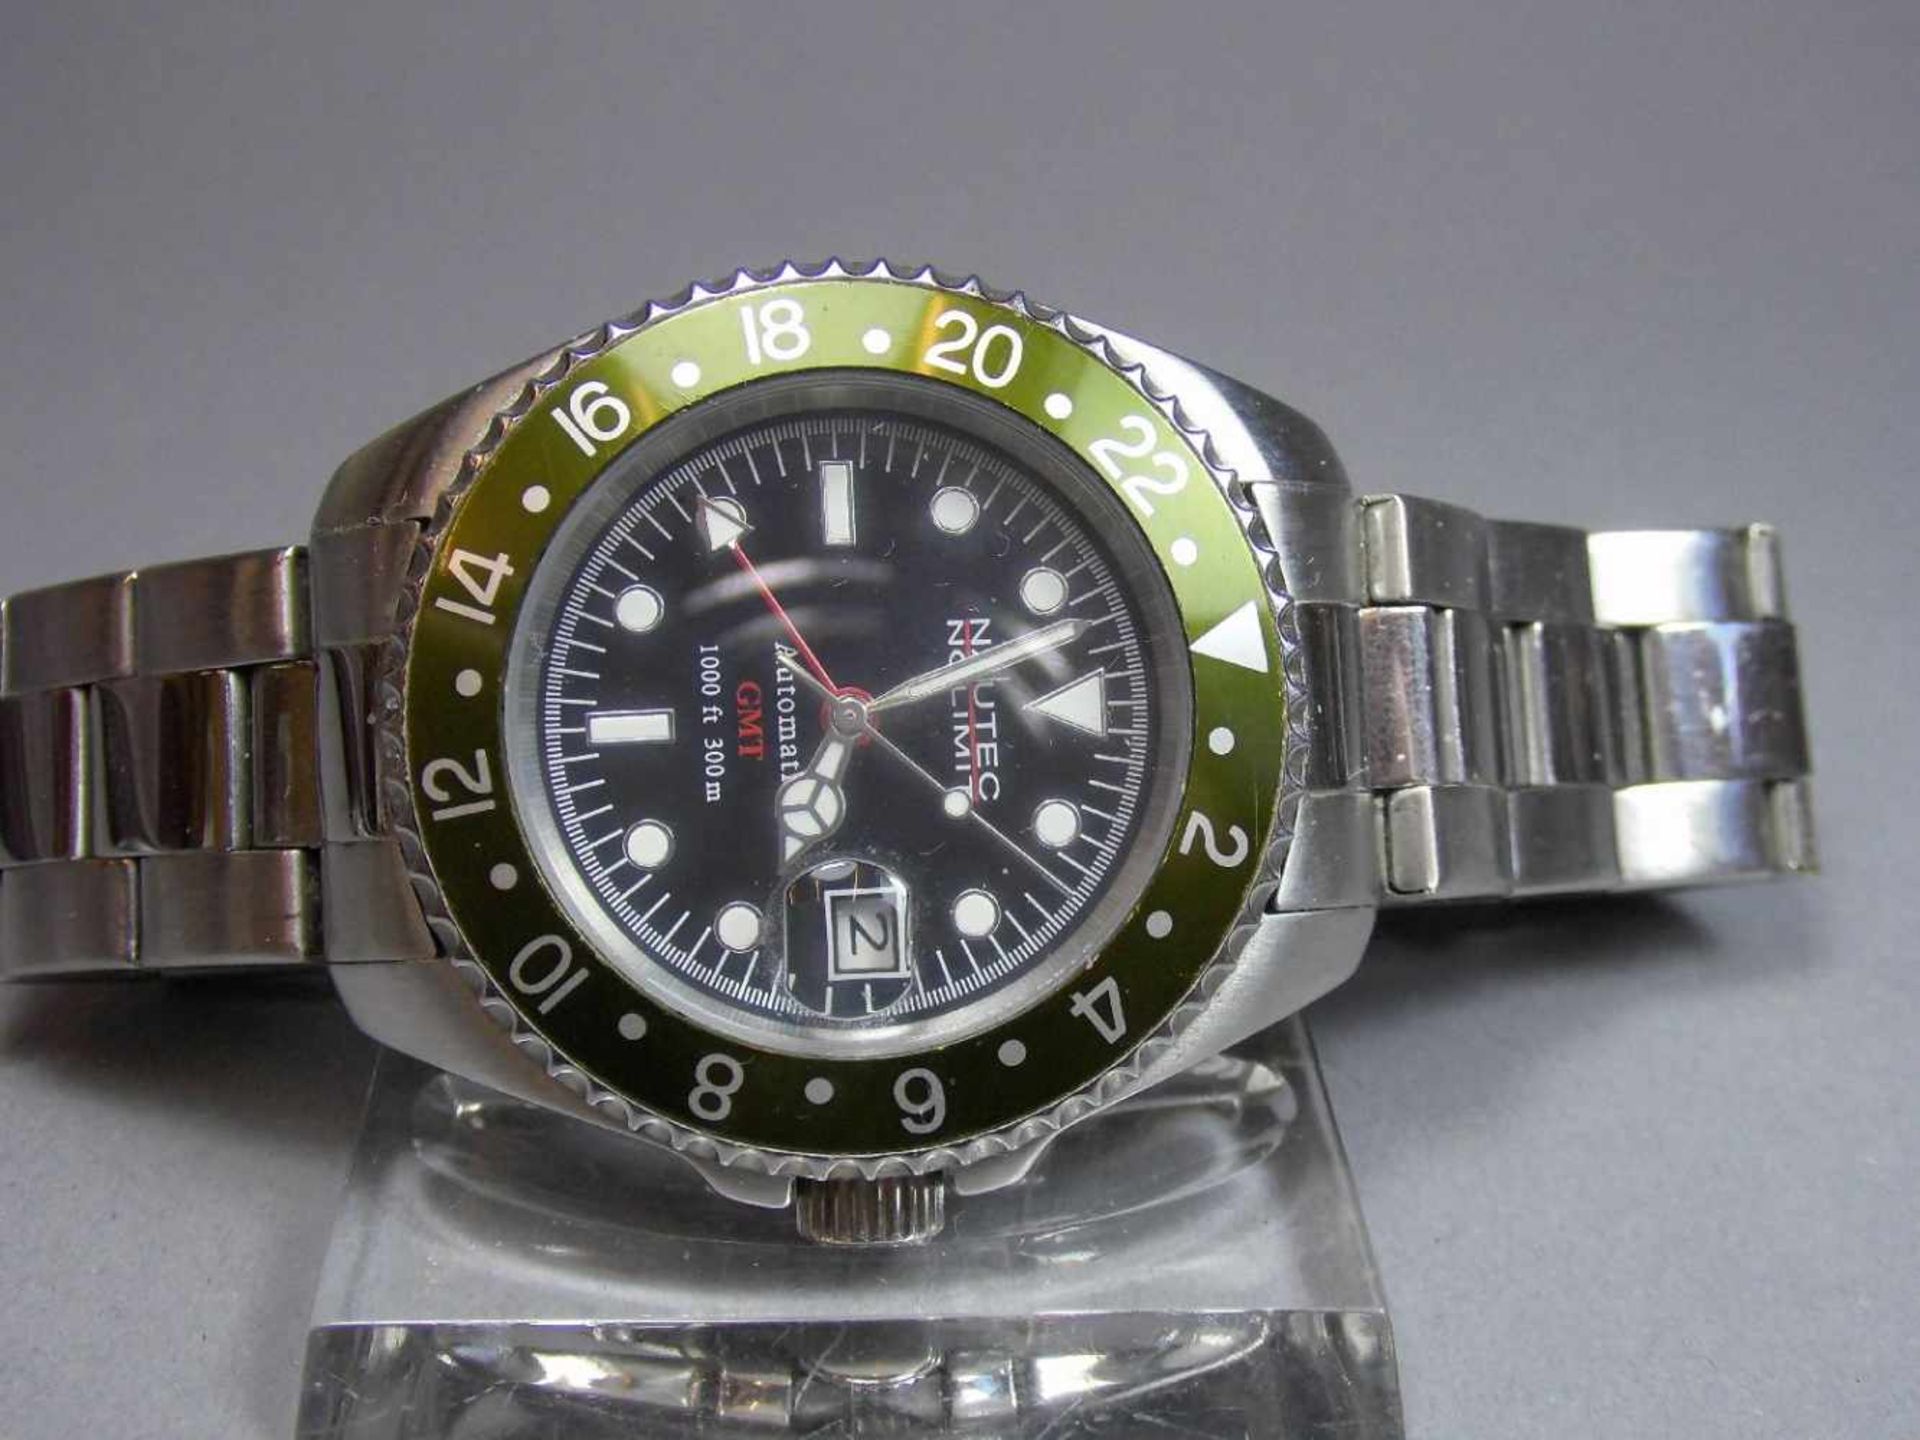 ARMBANDUHR : NAUTEK NO LIMIT GMT / wristwatch, Automatik-Uhr. Rundes Stahlgehäuse mit Gliederarmband